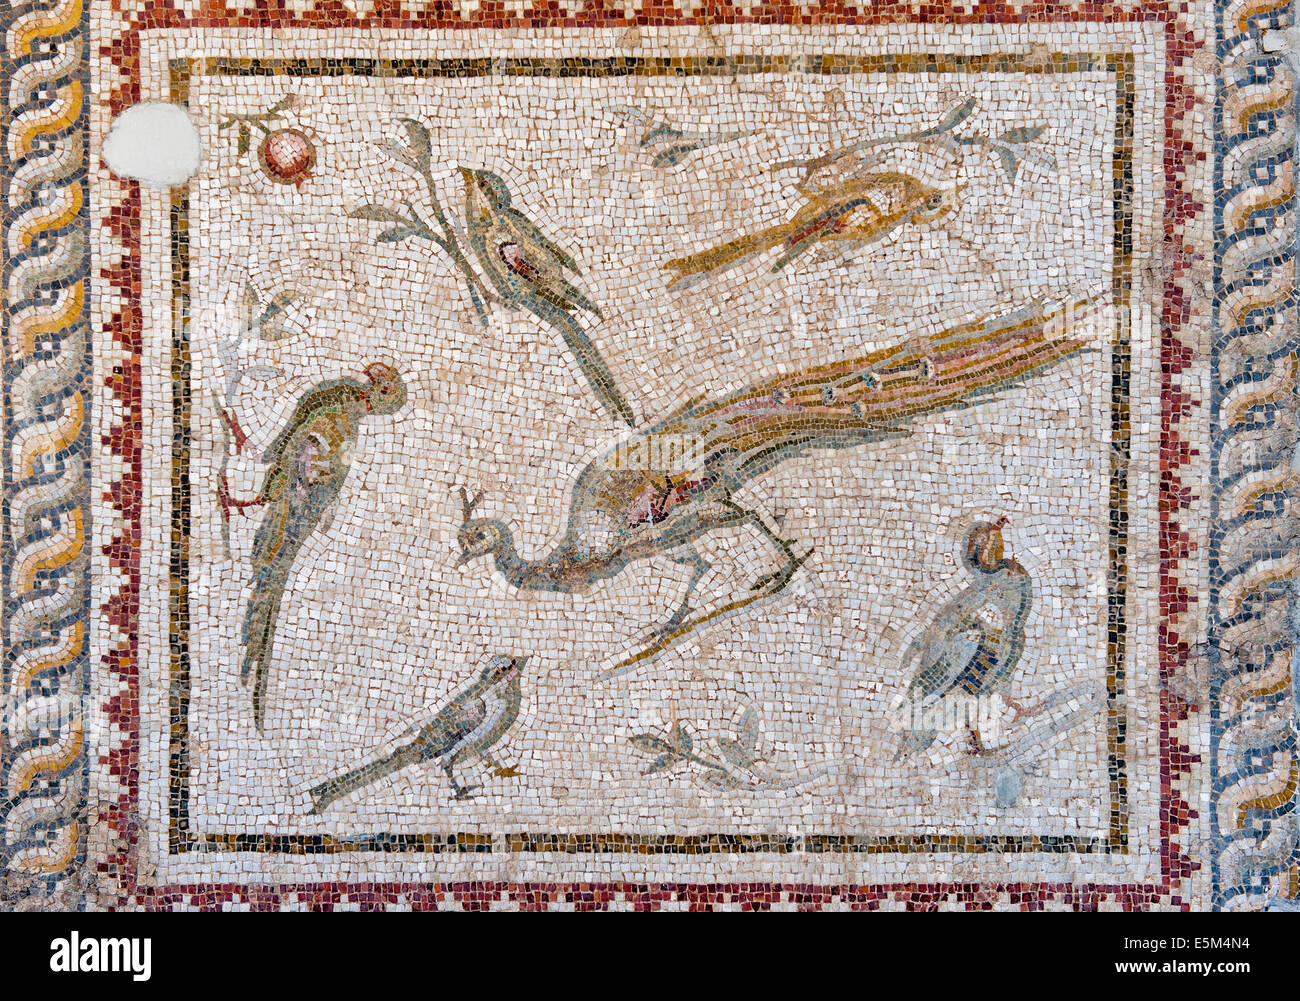 Mosaico de pájaros y flores de Harbiye (DAPHNE), 2% A.C., Museo de Arqueología de Hatay, Antioquía, en el suroeste de Turquía Foto de stock